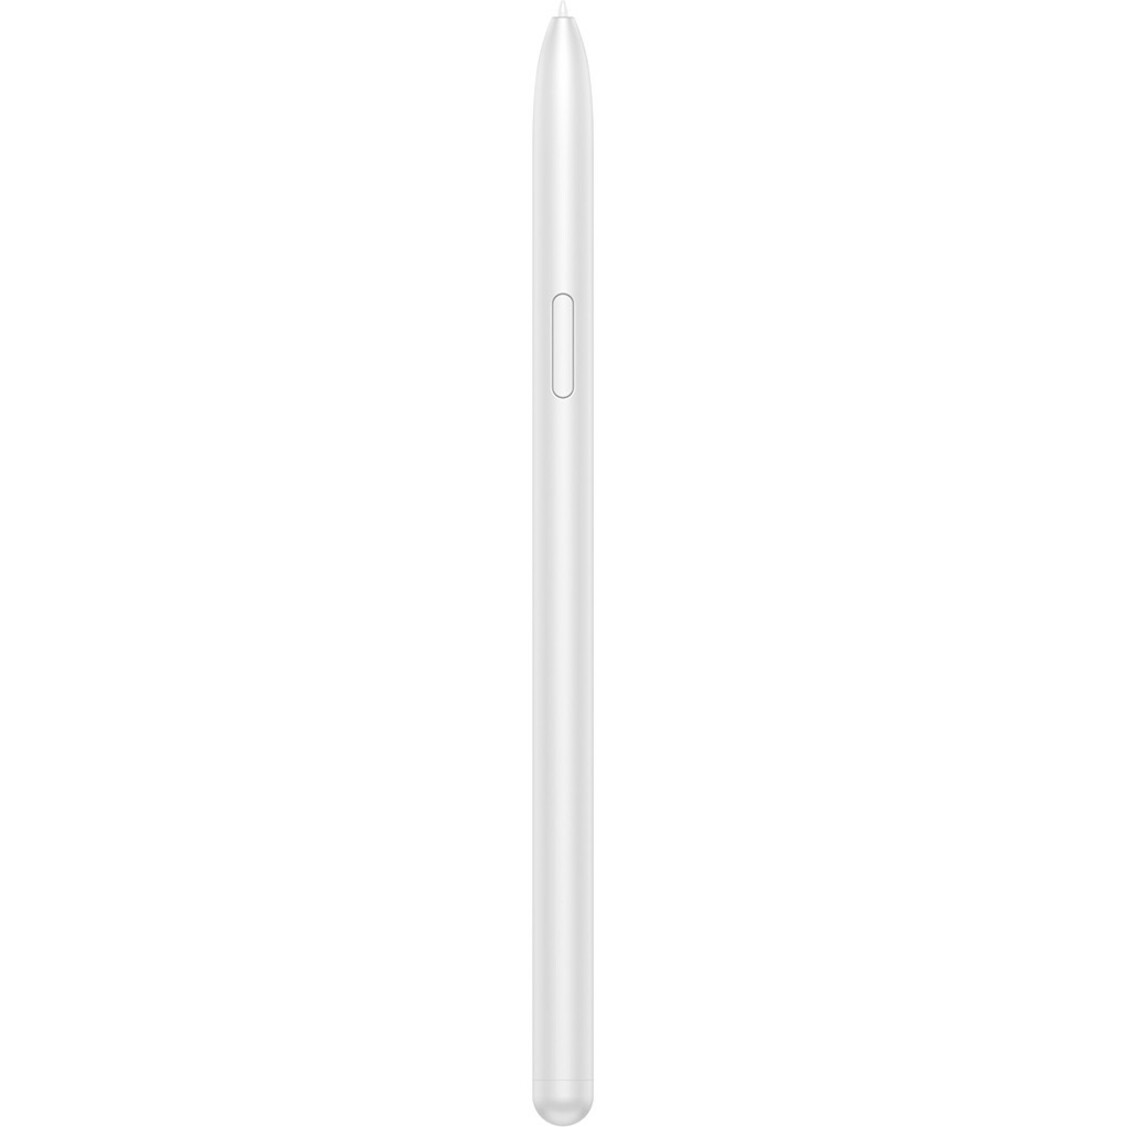 Samsung EJ-PT730BSEGUJ Galaxy Tab S7 FE S Pen, Mystic Silver - Stylus for Galaxy Tab S7 FE Tablet